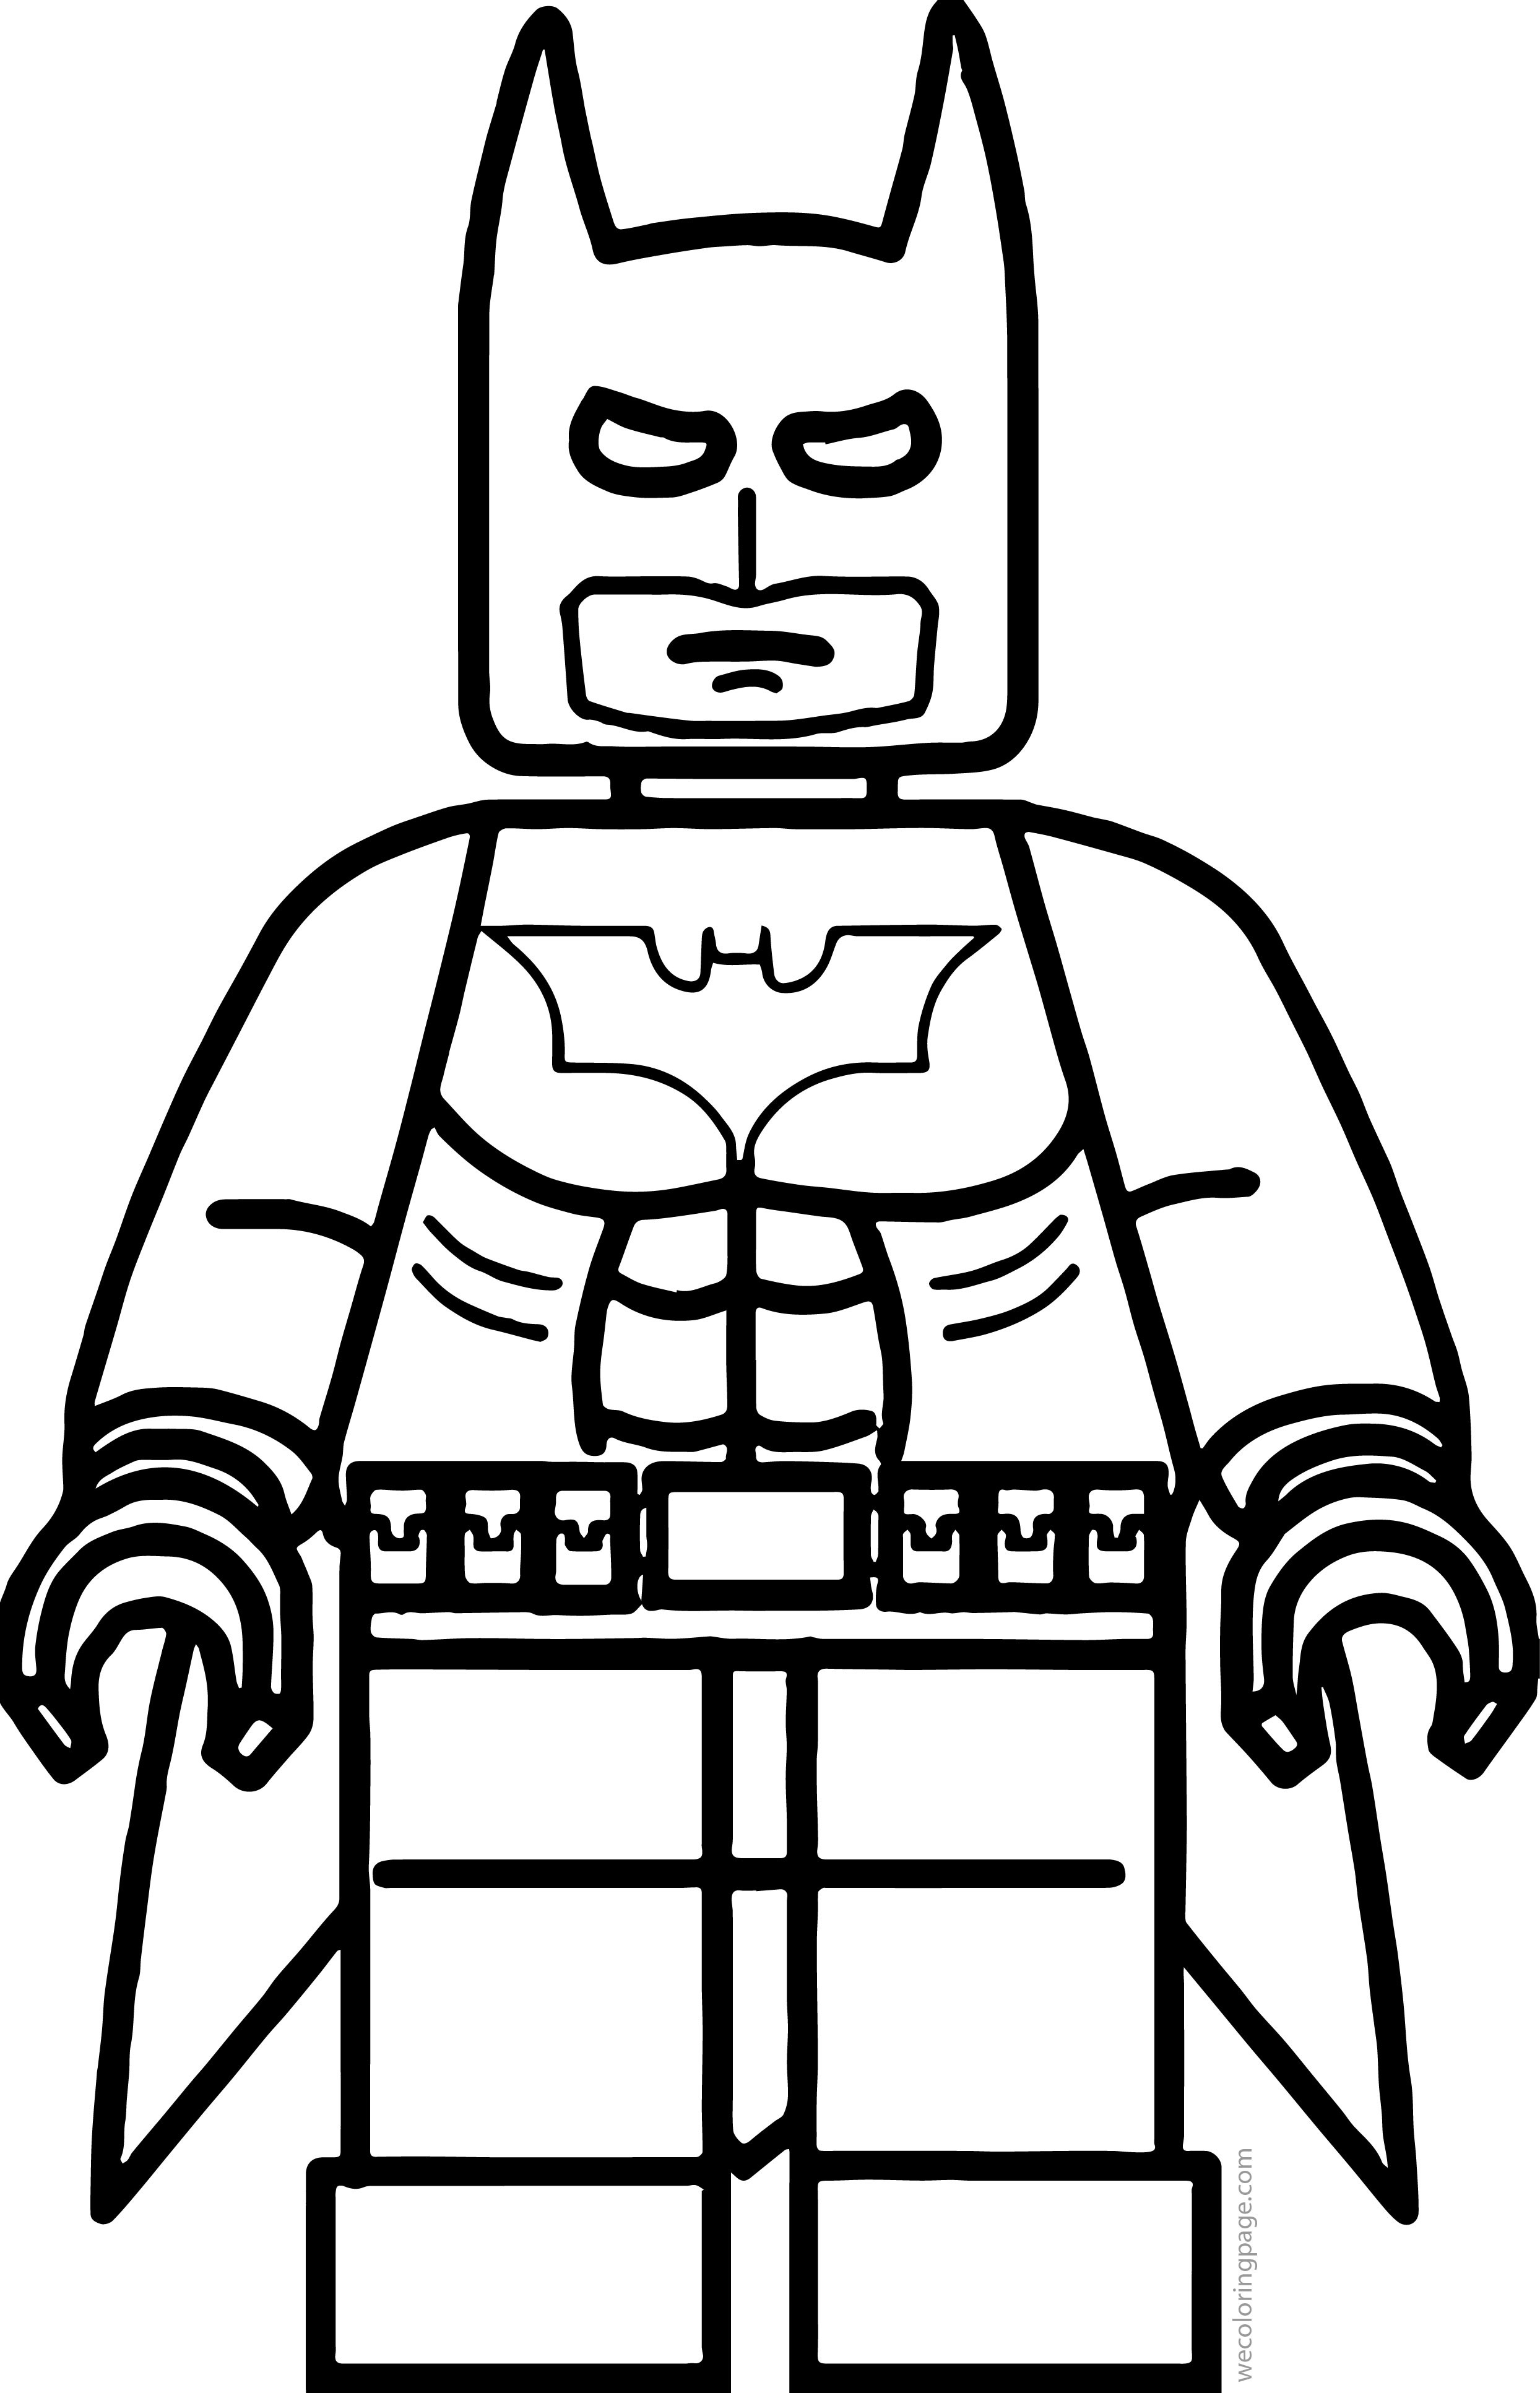 Batman Lego Coloring Pages
 Lego Batman Coloring Page